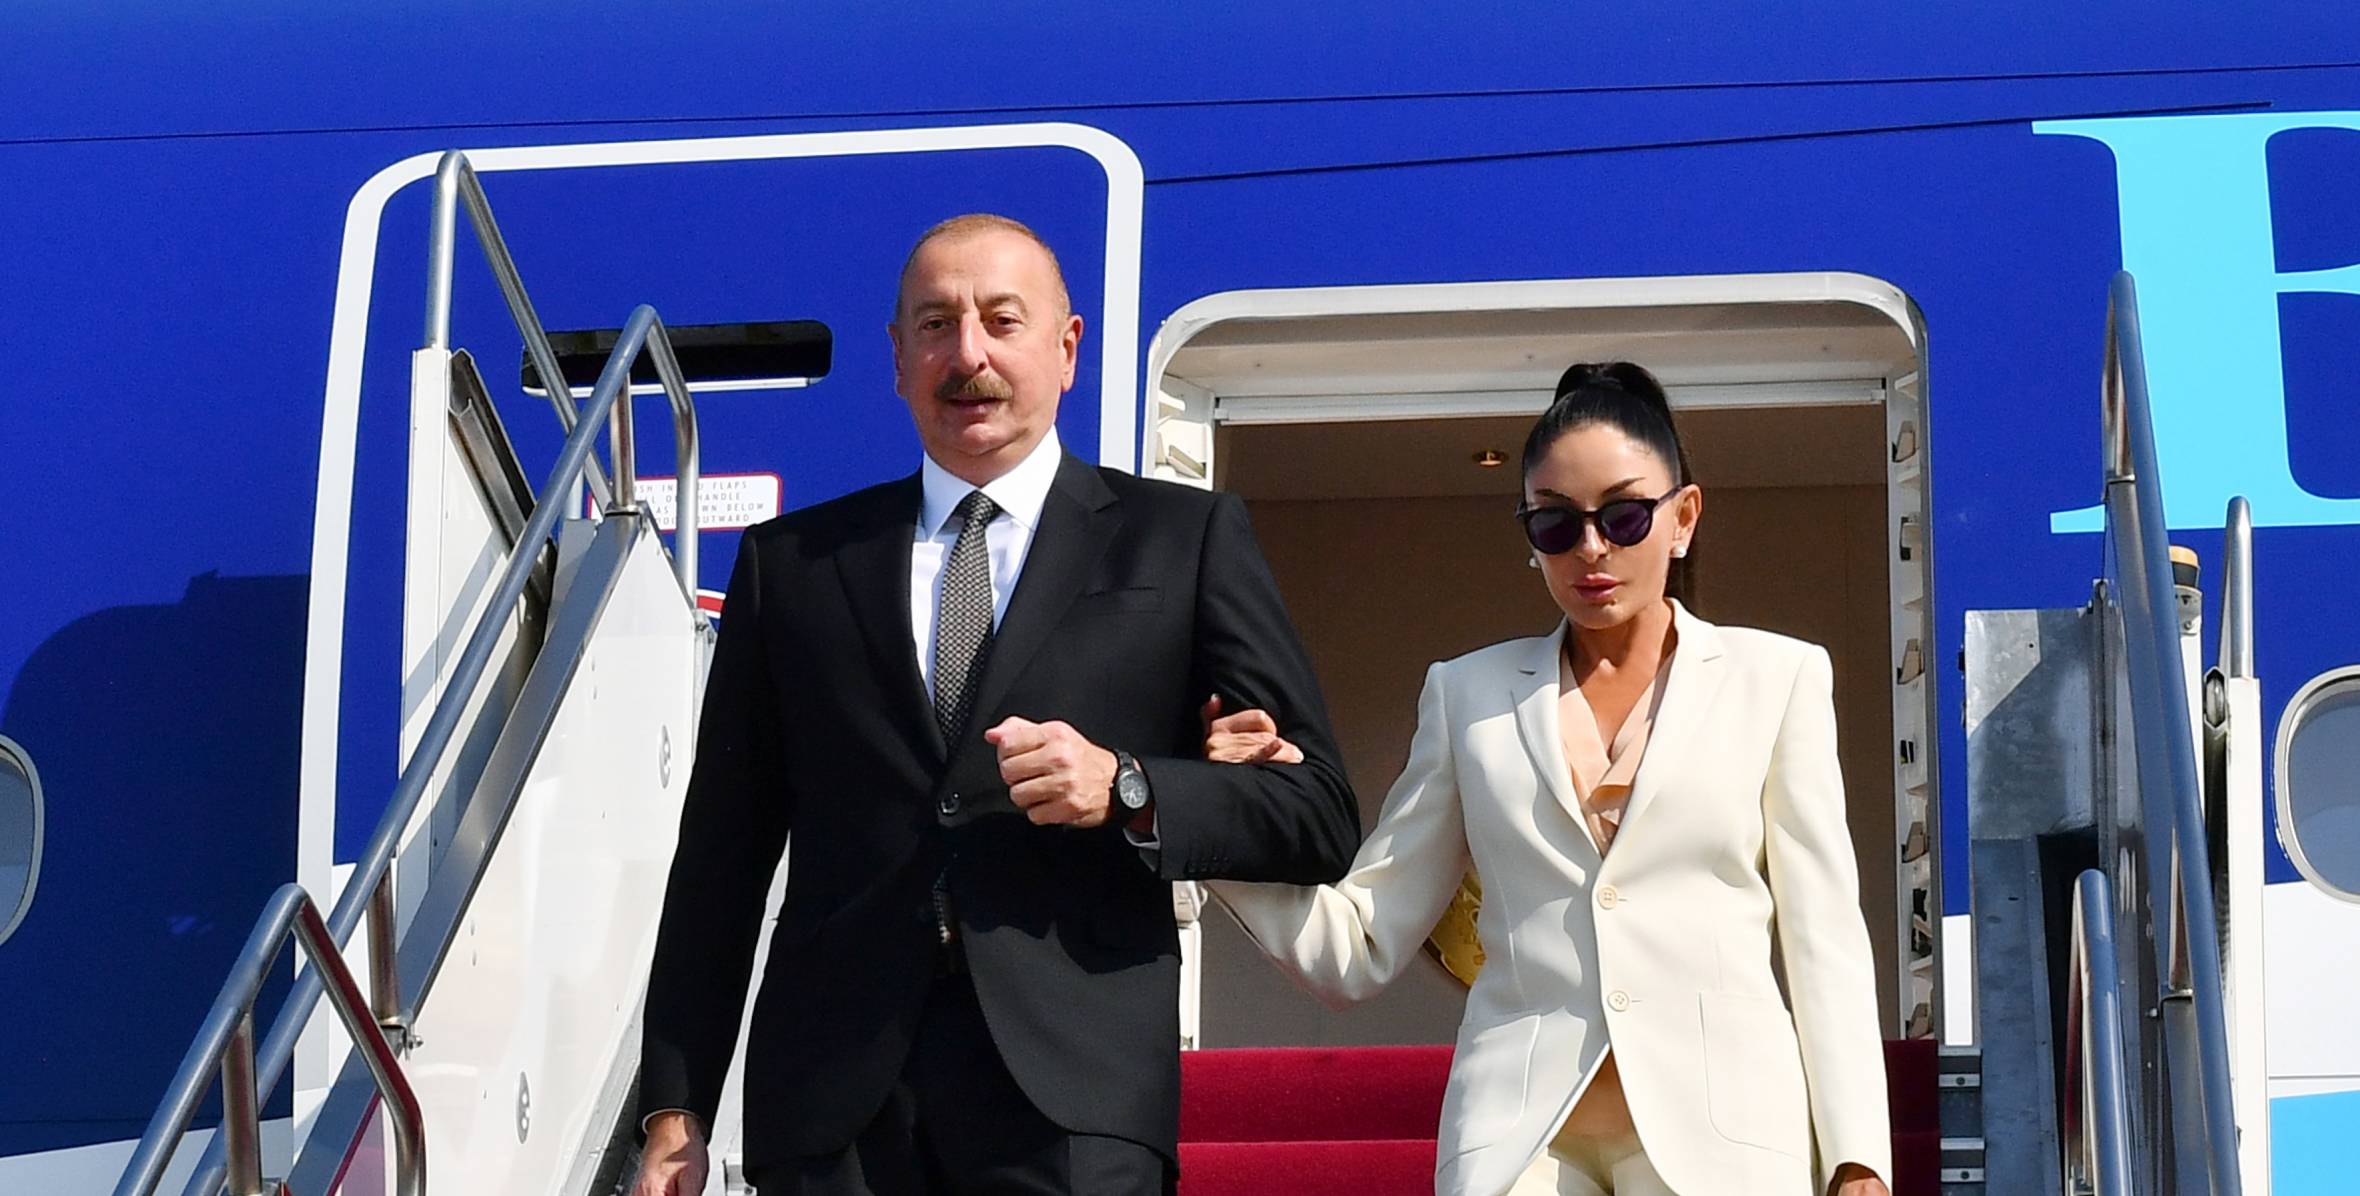 Ильхам Алиев прибыл с рабочим визитом в Венгрию